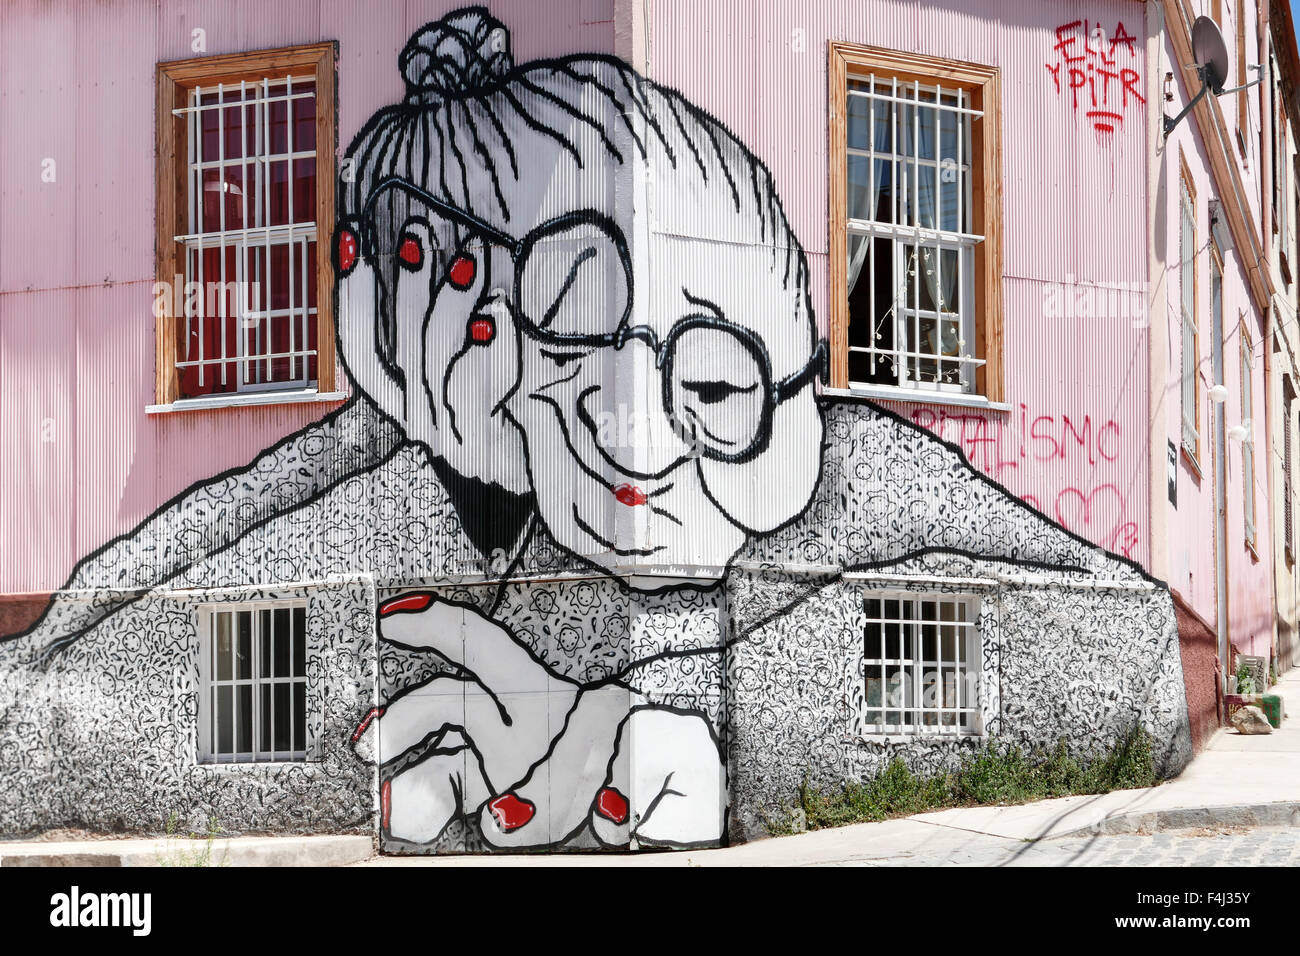 VALPARAISO, CHILE - 29. Oktober 2014: Graffiti von einer alten Frau spritzt auf einer Gebäudefassade in Valparaiso, Chile. Valparaiso sein Stockfoto